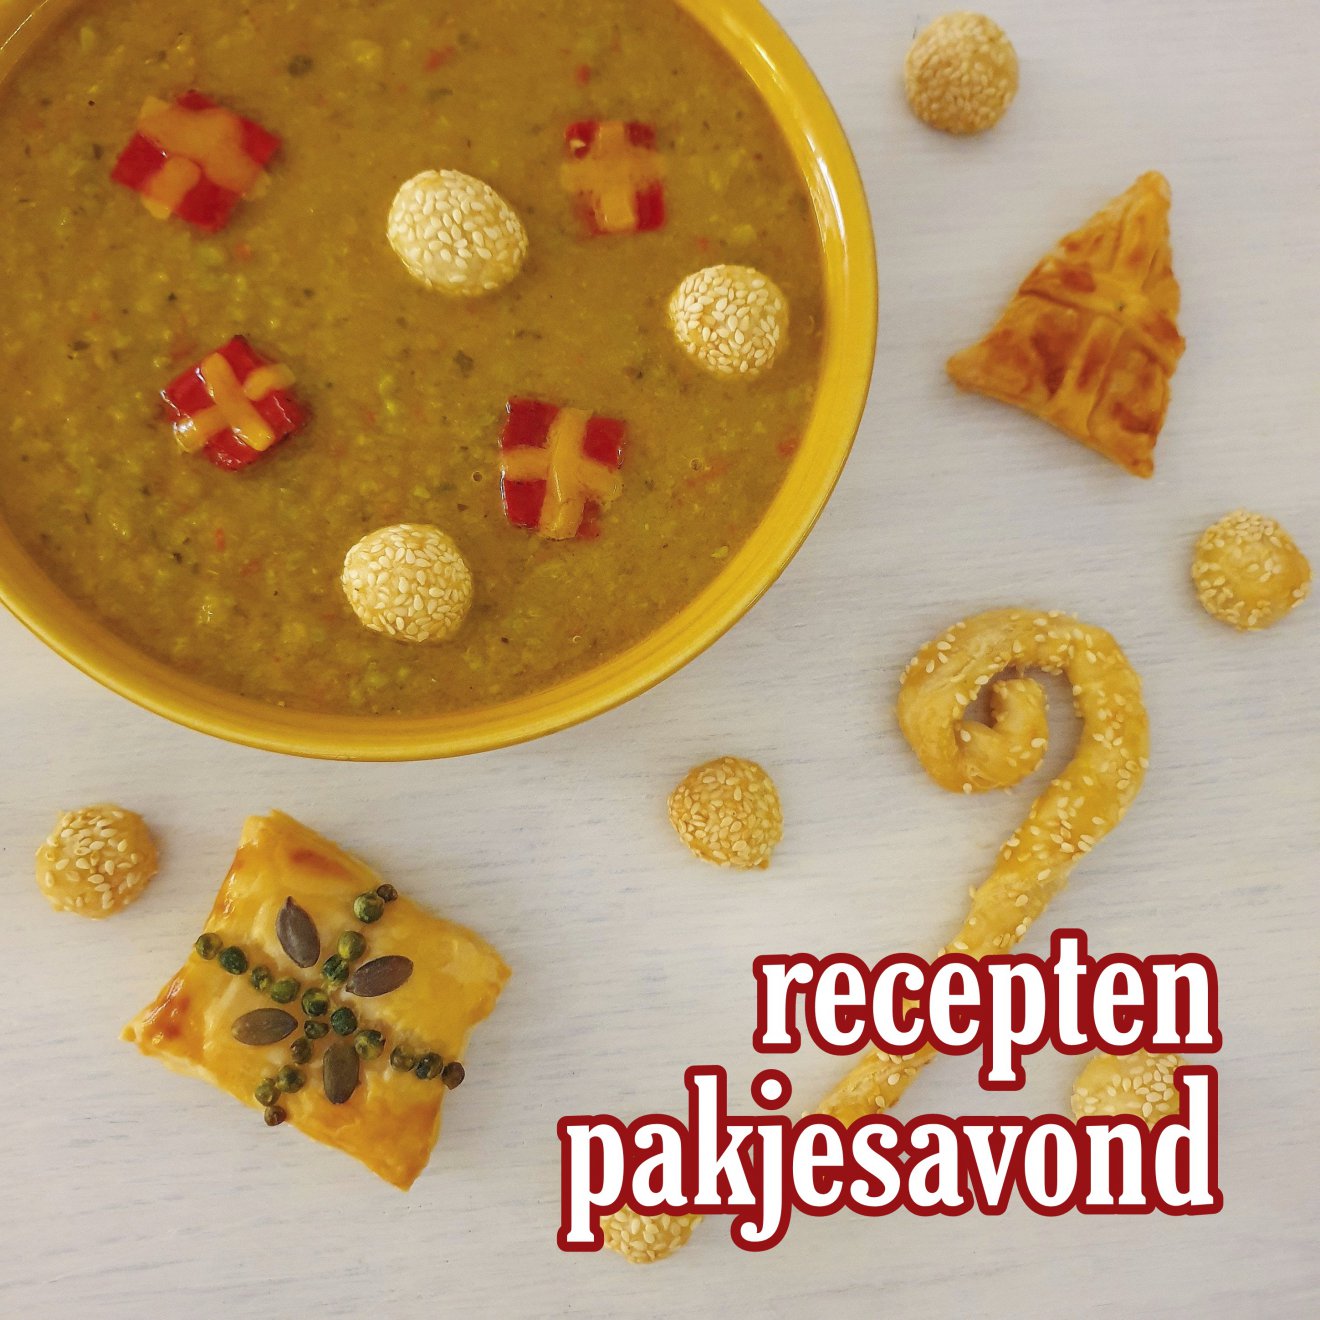 Lekker eten op pakjesavond: leuke Sinterklaas recepten voor 5 december